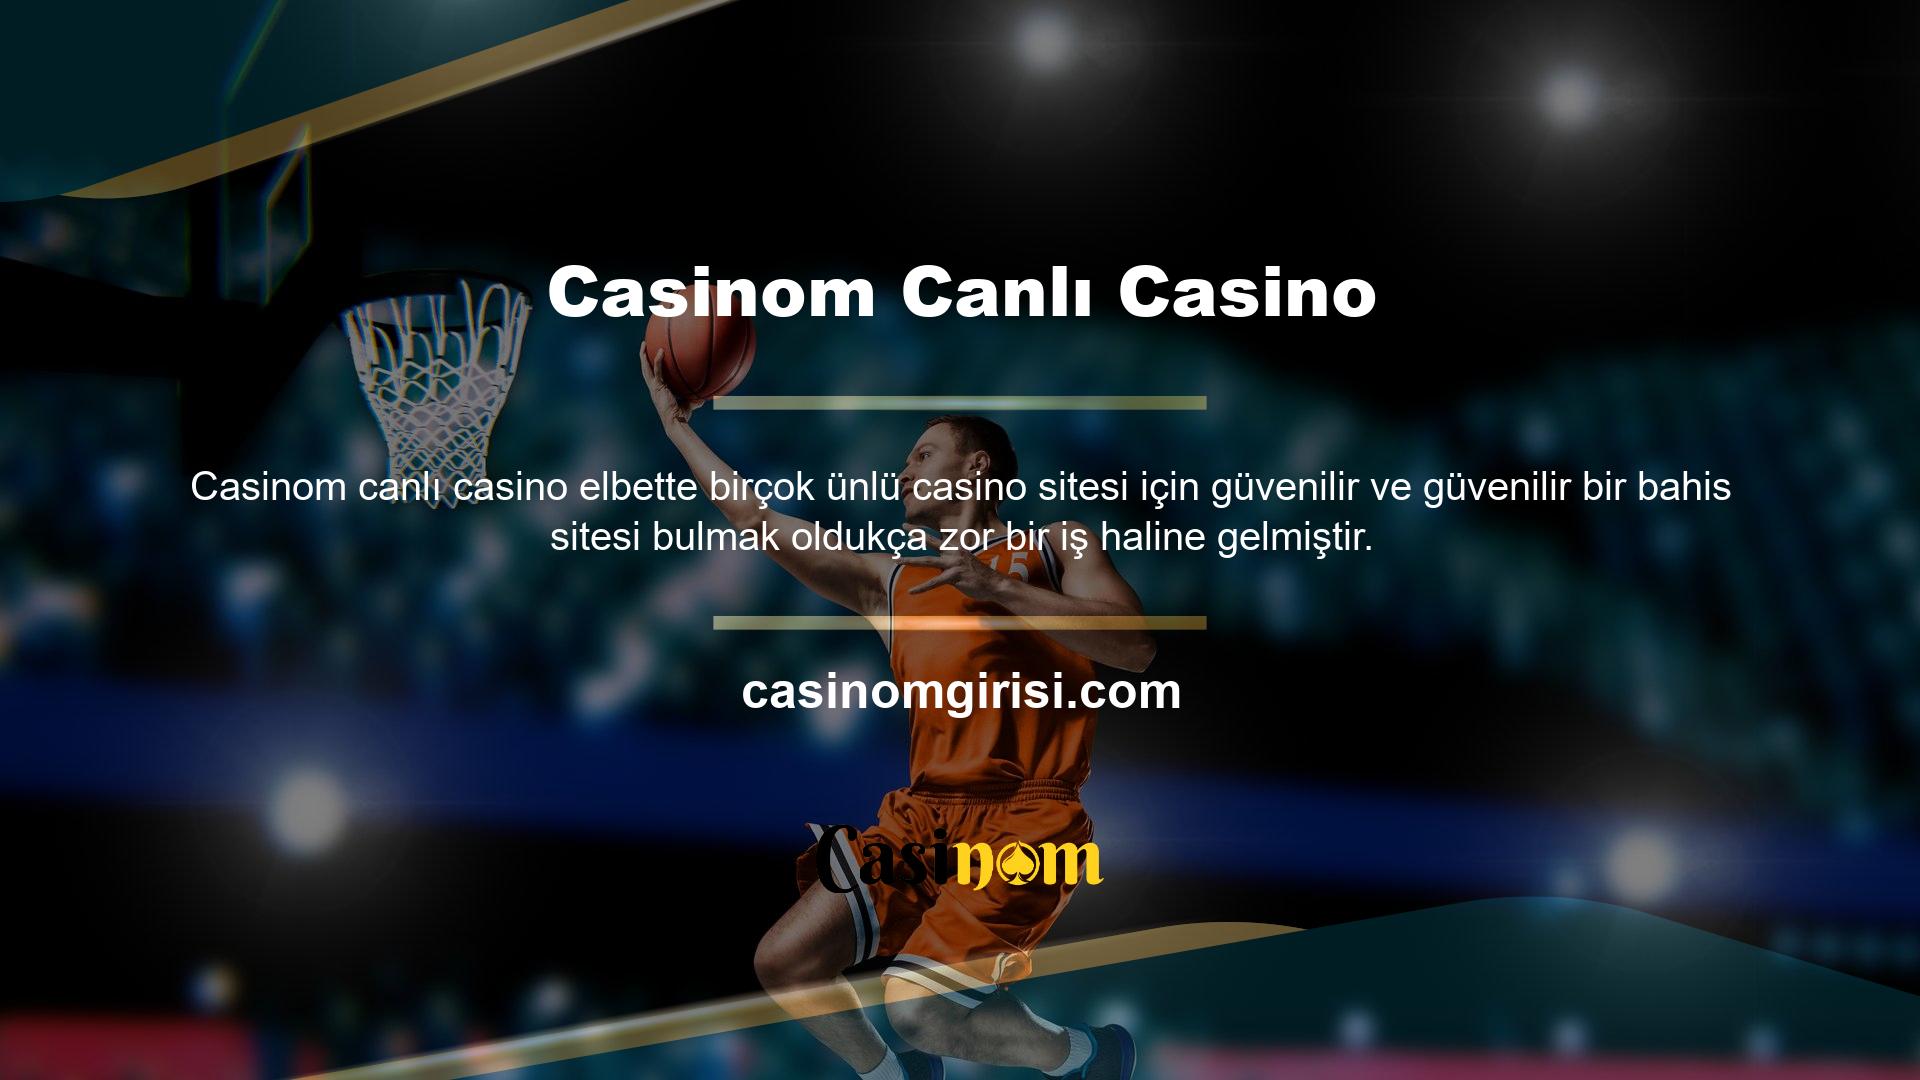 Casinom, çok sayıda kullanıcının ilgisini çeken, kısa sürede yaygınlaşan ve Türkiye'de bağımsız bir nokta haline gelen, Türk kullanıcıların da beğenisini kazanan sitelerden biridir